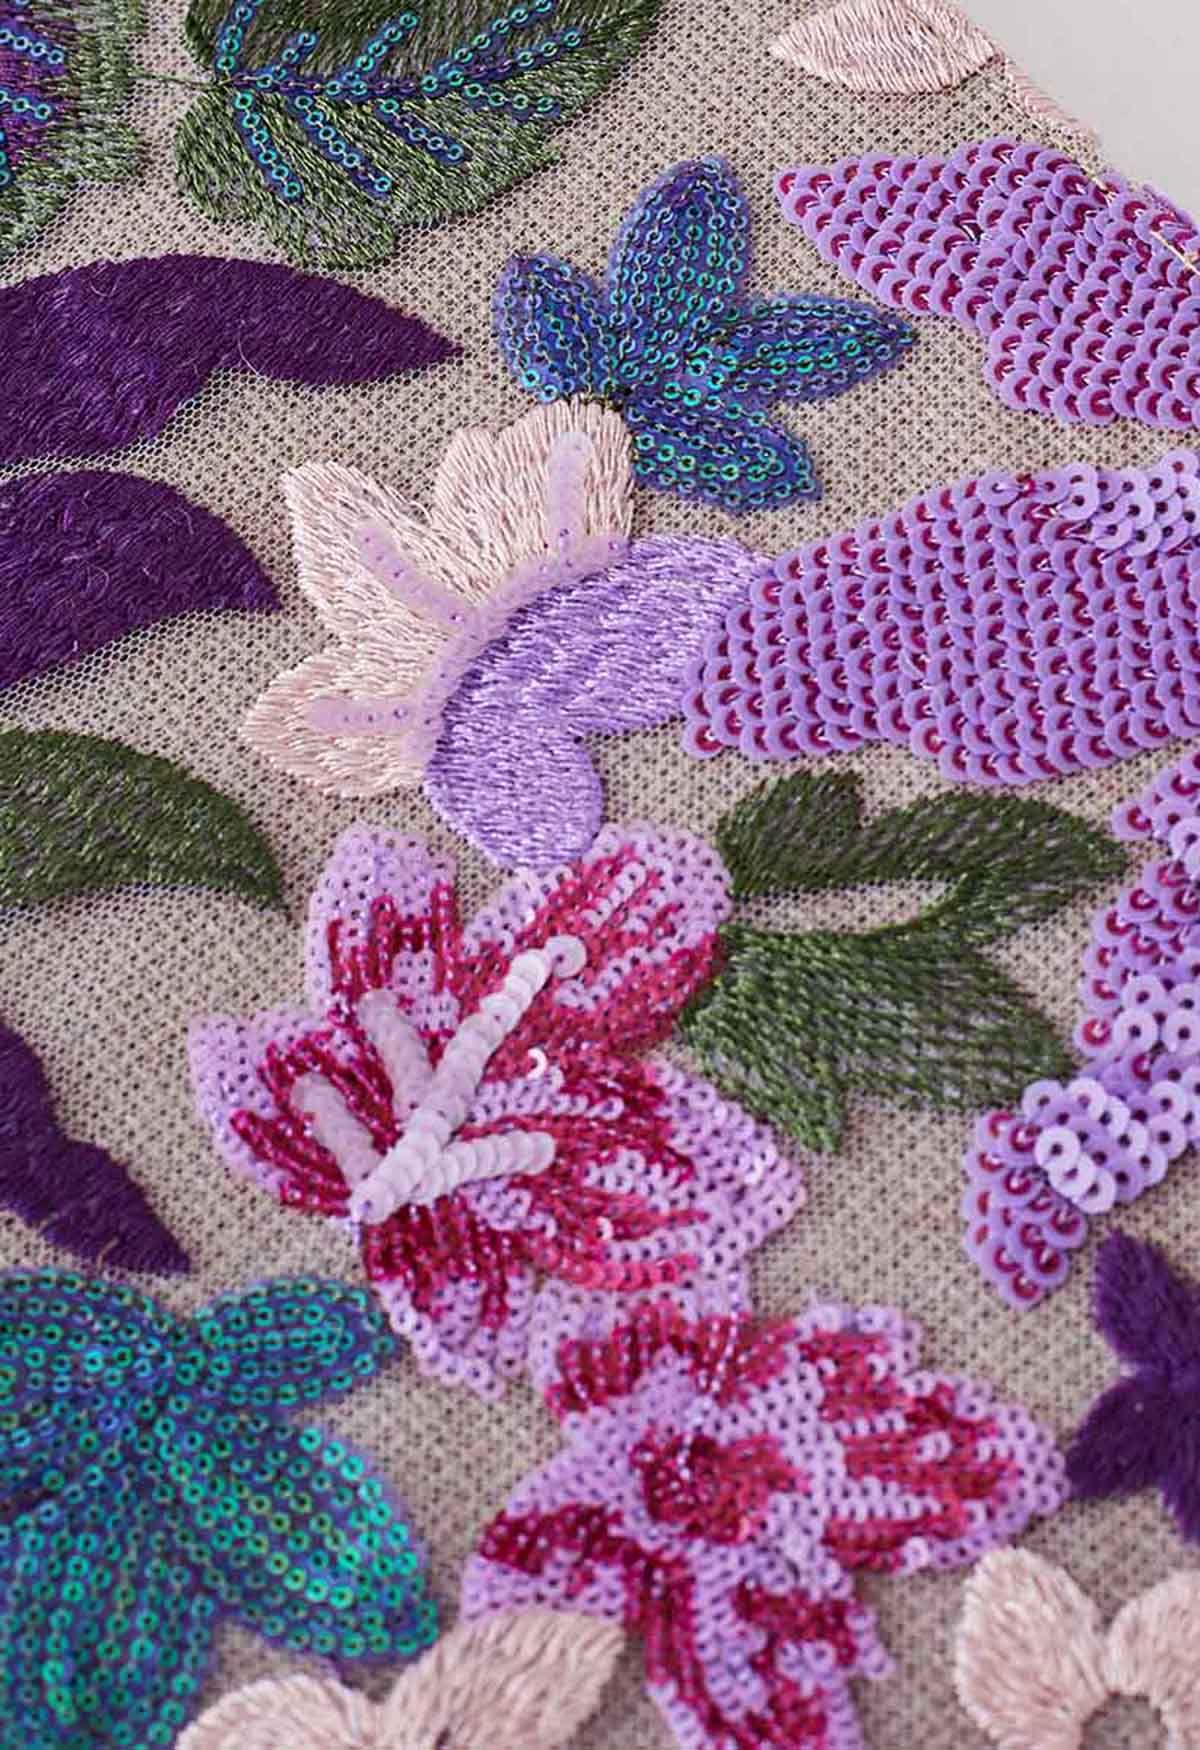 Einkaufstasche mit Bambusgriff und Pailletten-Blumenstickerei in Violett